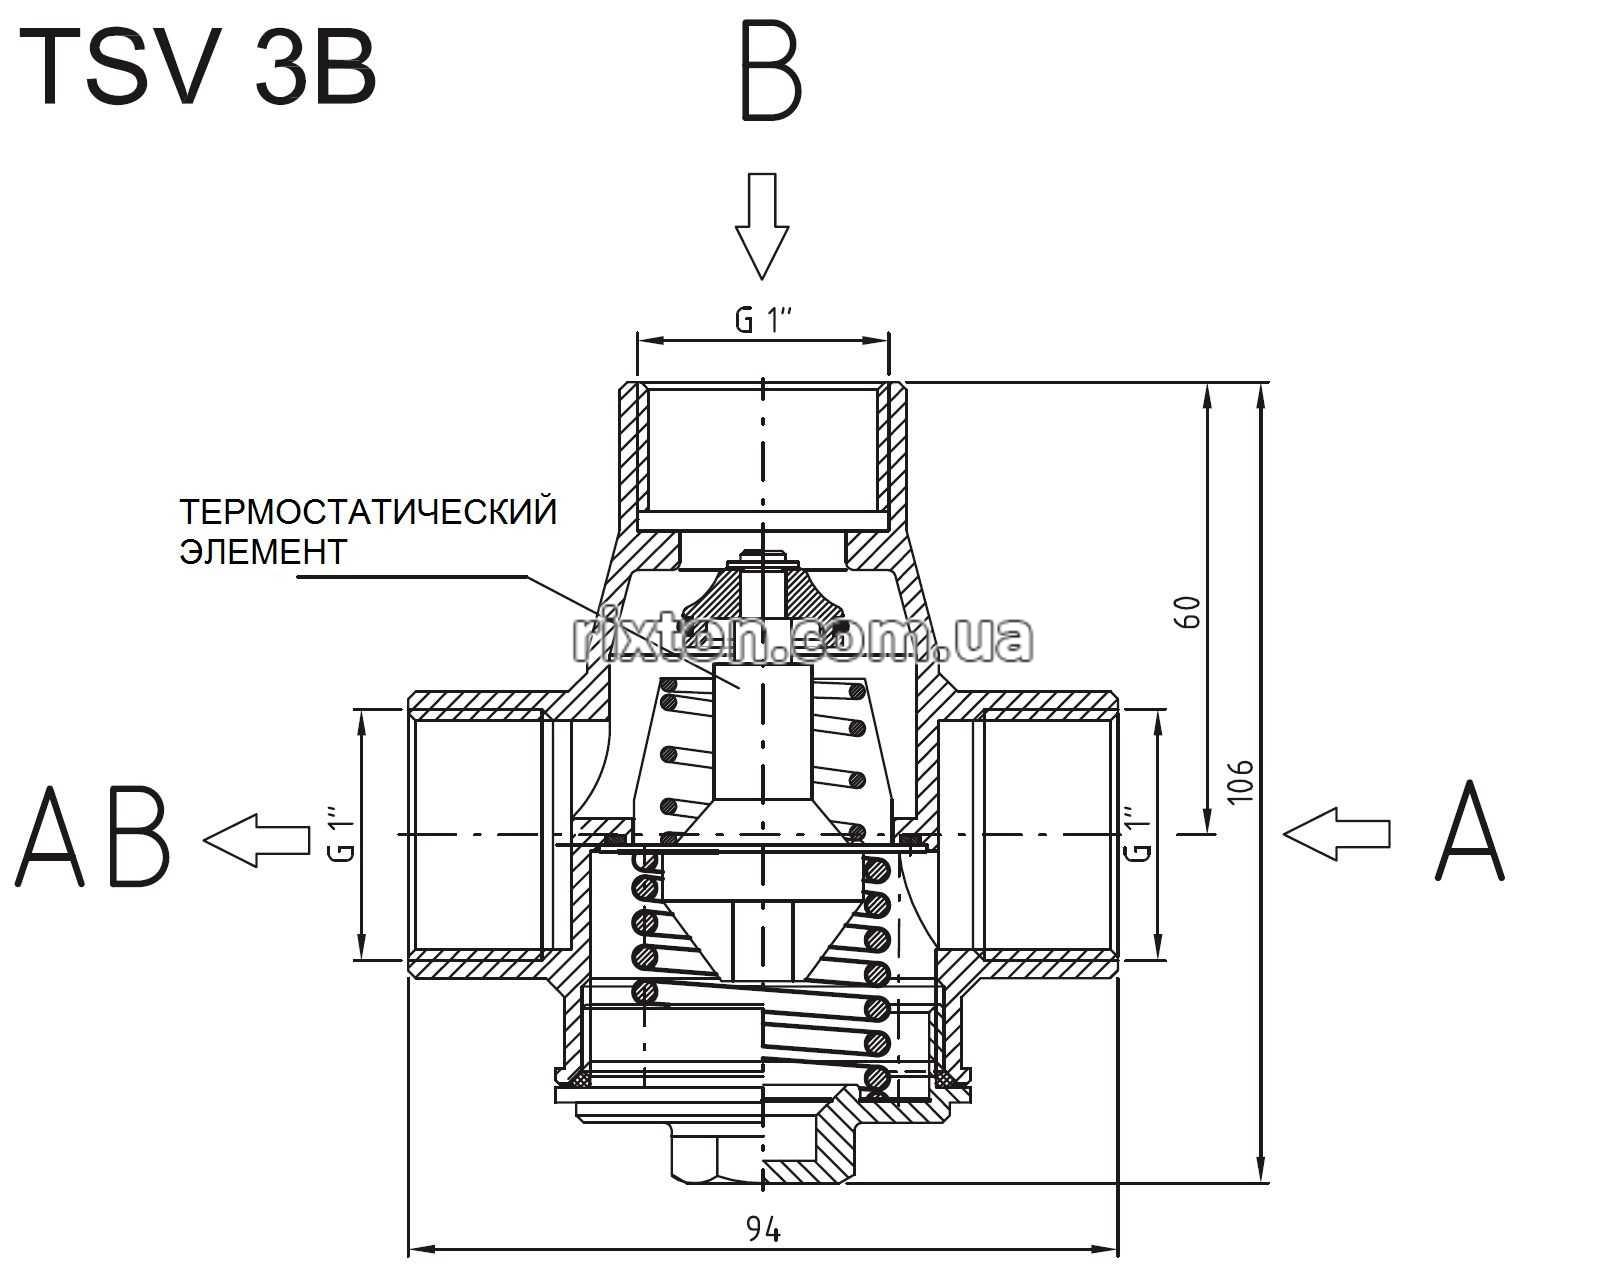 Как работает термостатический клапан: Обзор термостатических клапанов Herz Armaturen